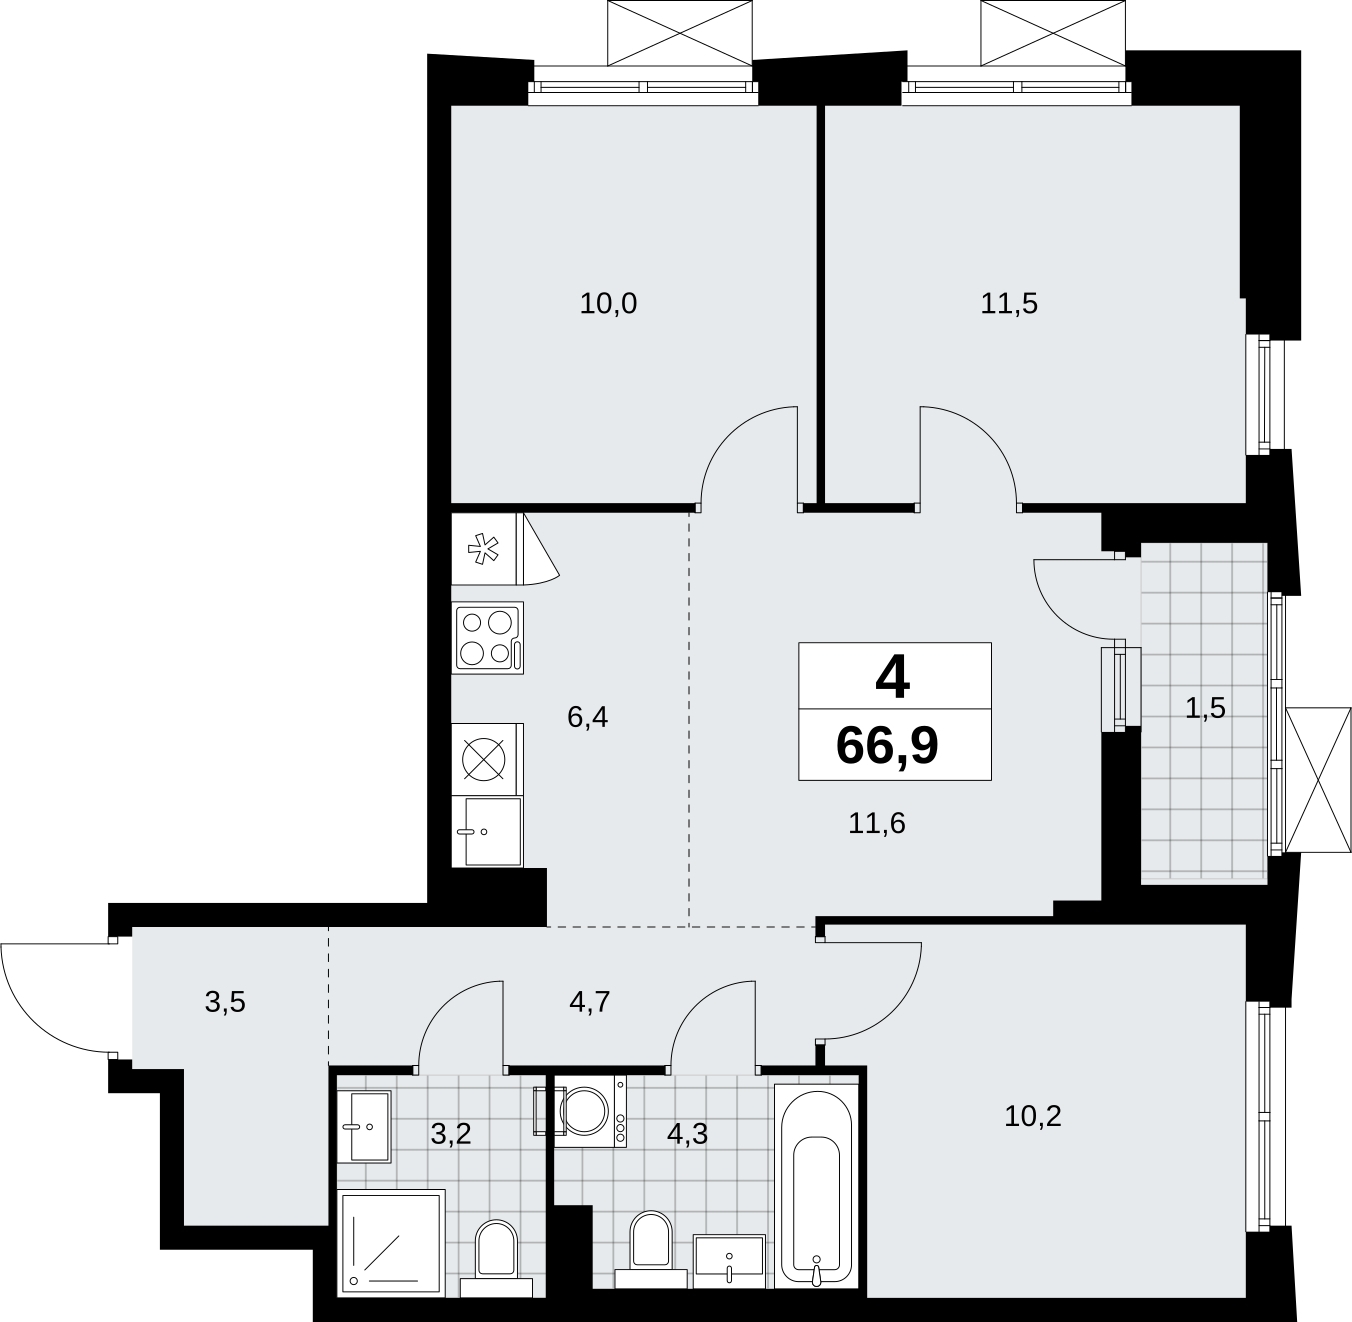 Продается просторная 4-комнатная квартира в новом ЖК, недалеко от метро